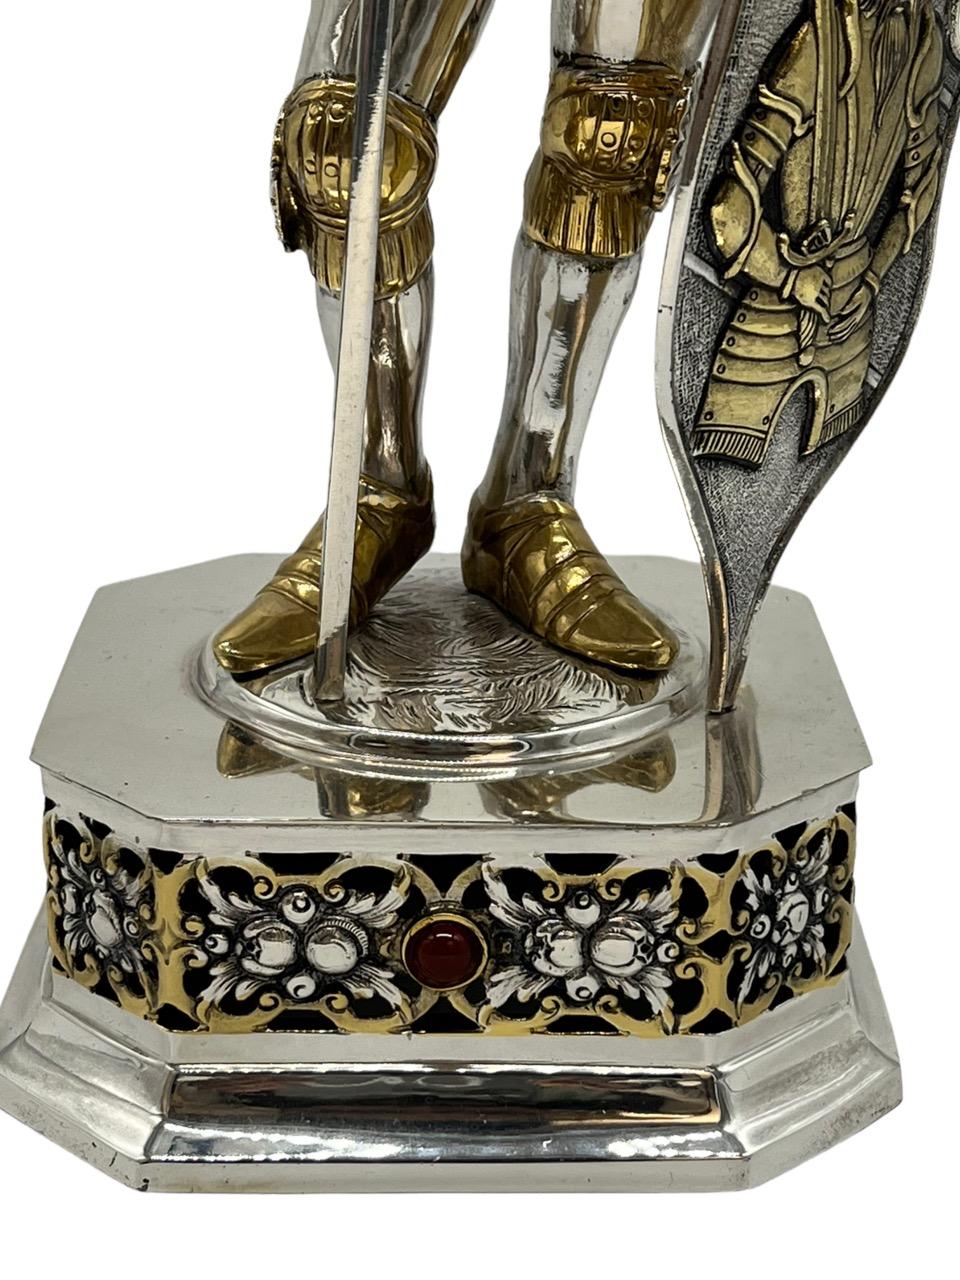 19. Jahrhundert deutsche extrem detaillierte Sterling Silber und Gold vergoldet Ritter Figur. Ritter in voller Rüstung, geschnitztes Gesicht unter einem klappbaren Visier aus weißem Knochen. Der Ritter hält eine Axt und einen Schild, der mit Wappen